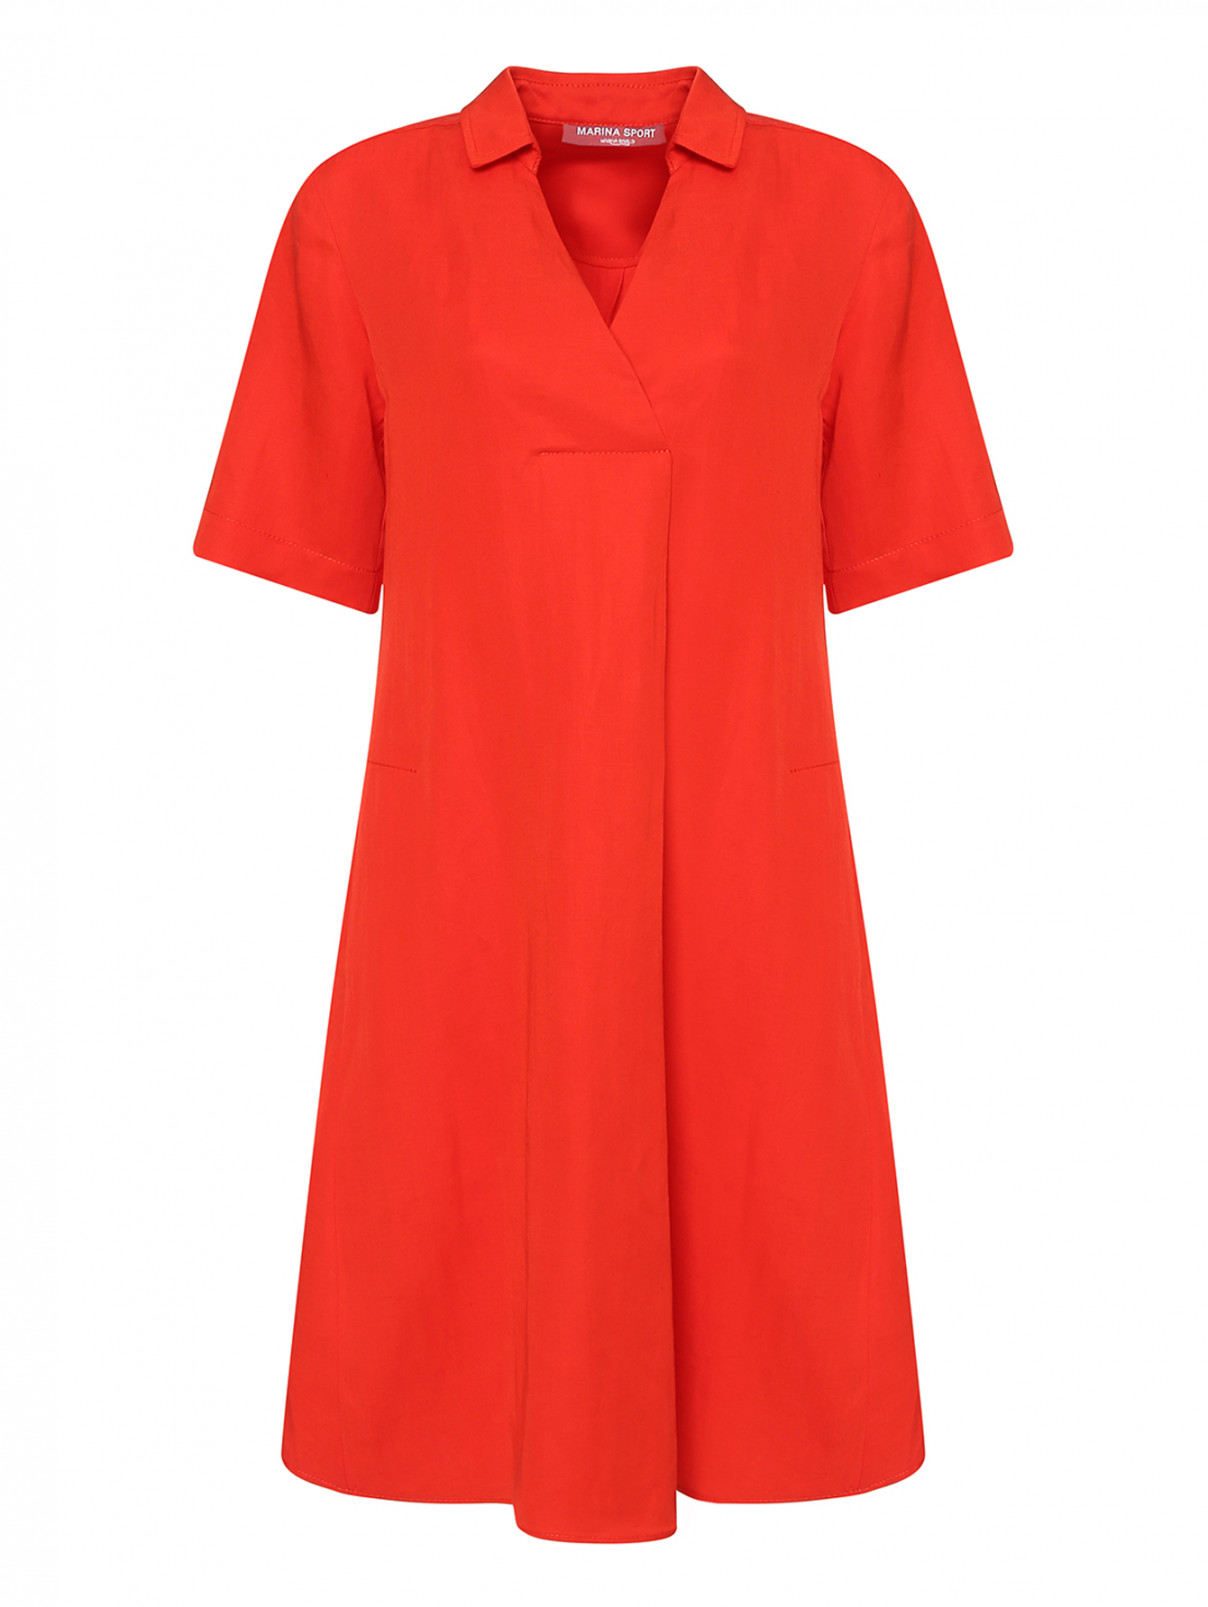 Платье изо льна со складкой Marina Rinaldi  –  Общий вид  – Цвет:  Красный